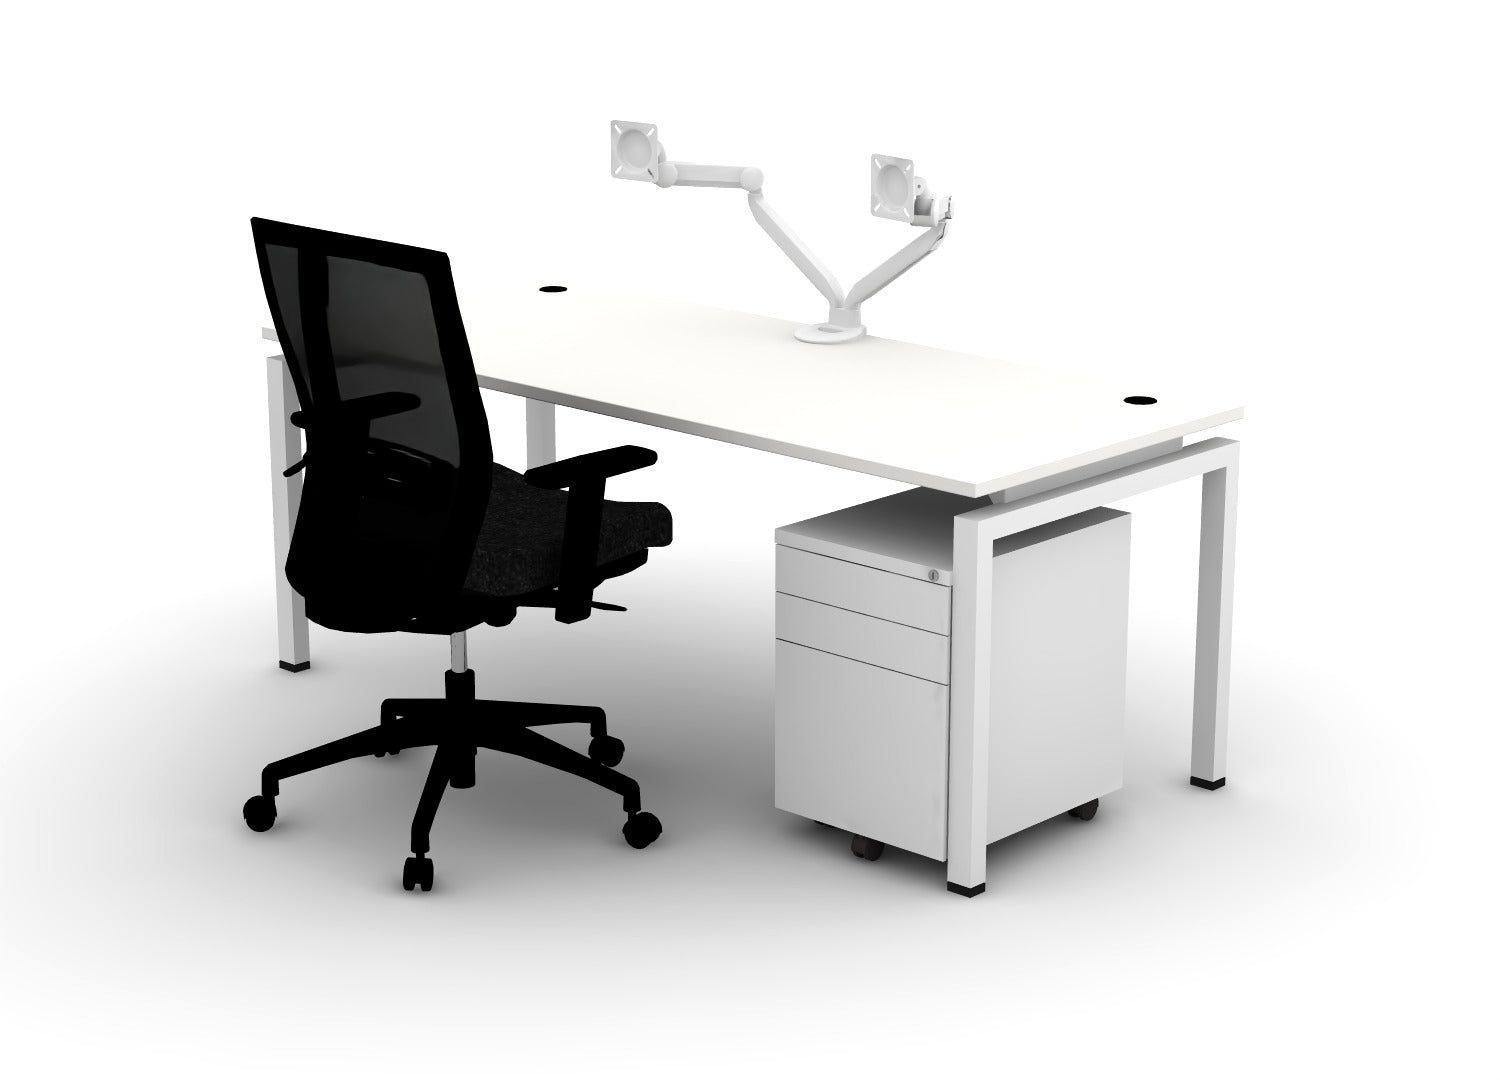 Luxe Office Bundle – Jot Desk